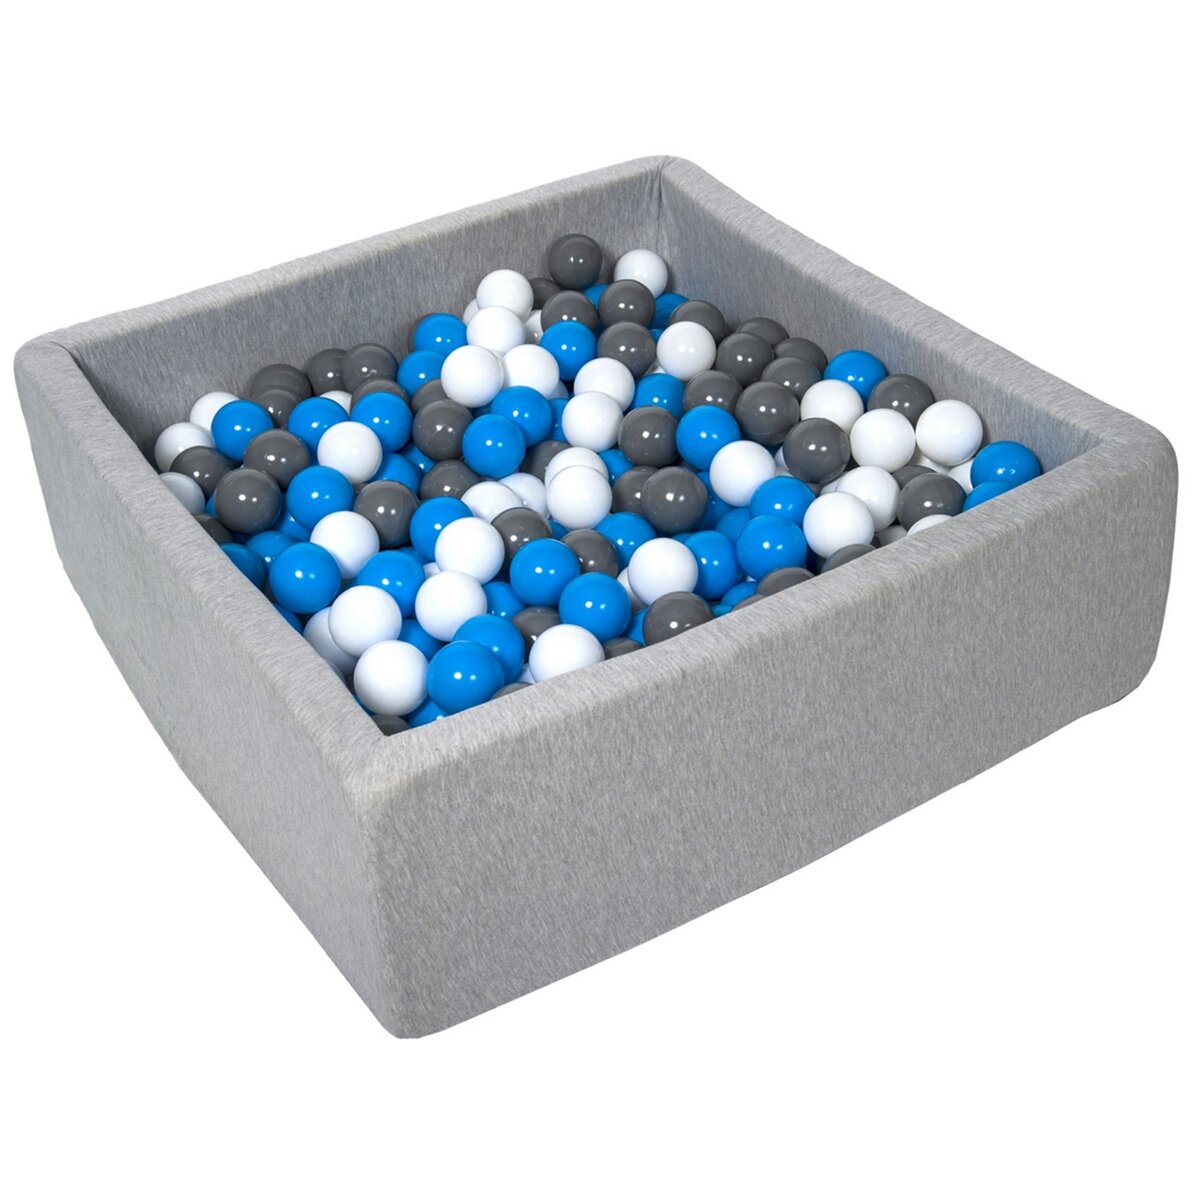  Piscine à balles pour enfant, 90x90 cm, Aire de jeu + 450 balles blanc, bleu, gris